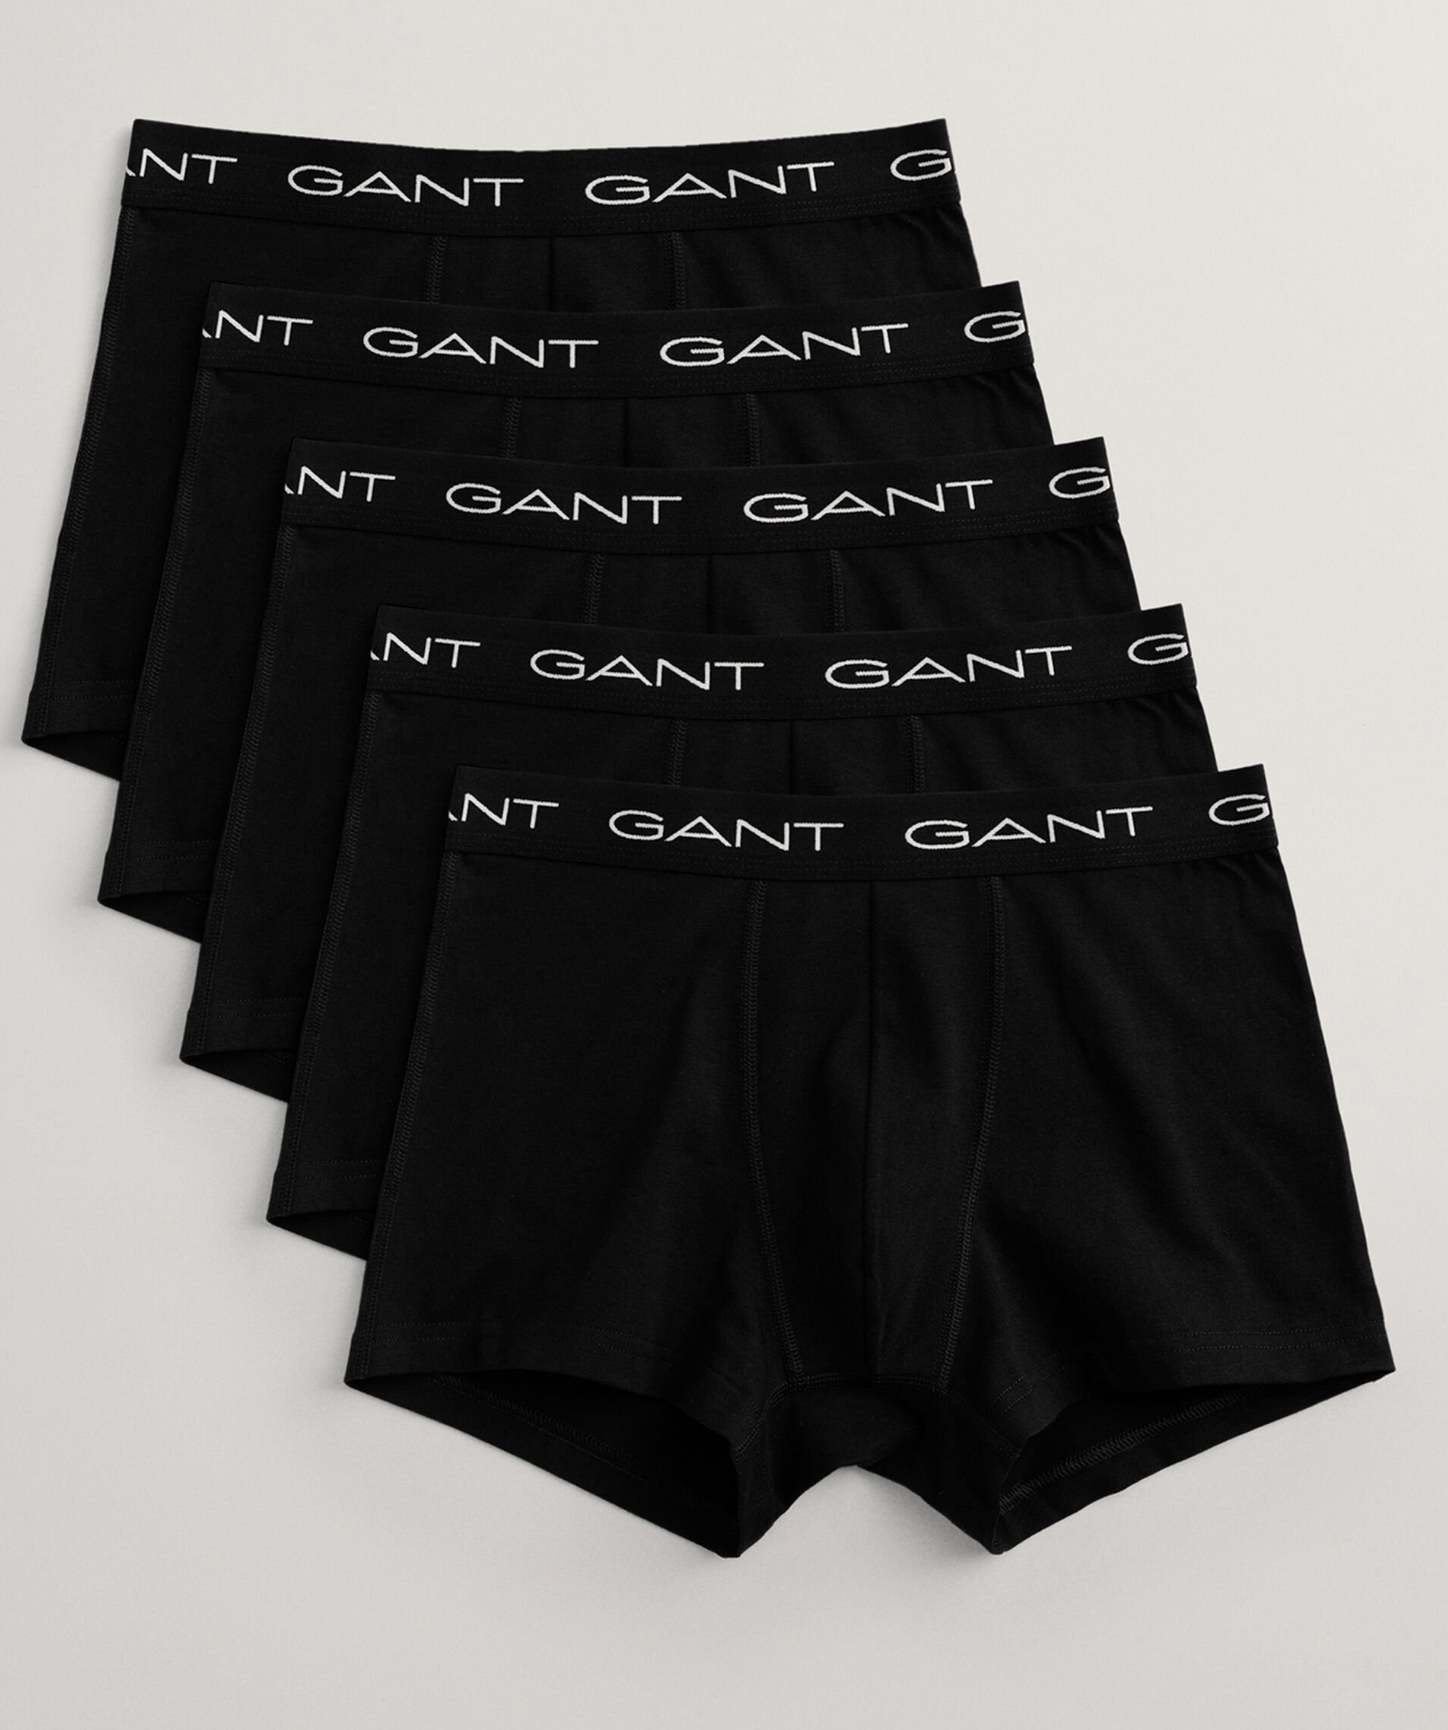 Gant Underwear 5-Pack Trunk Black